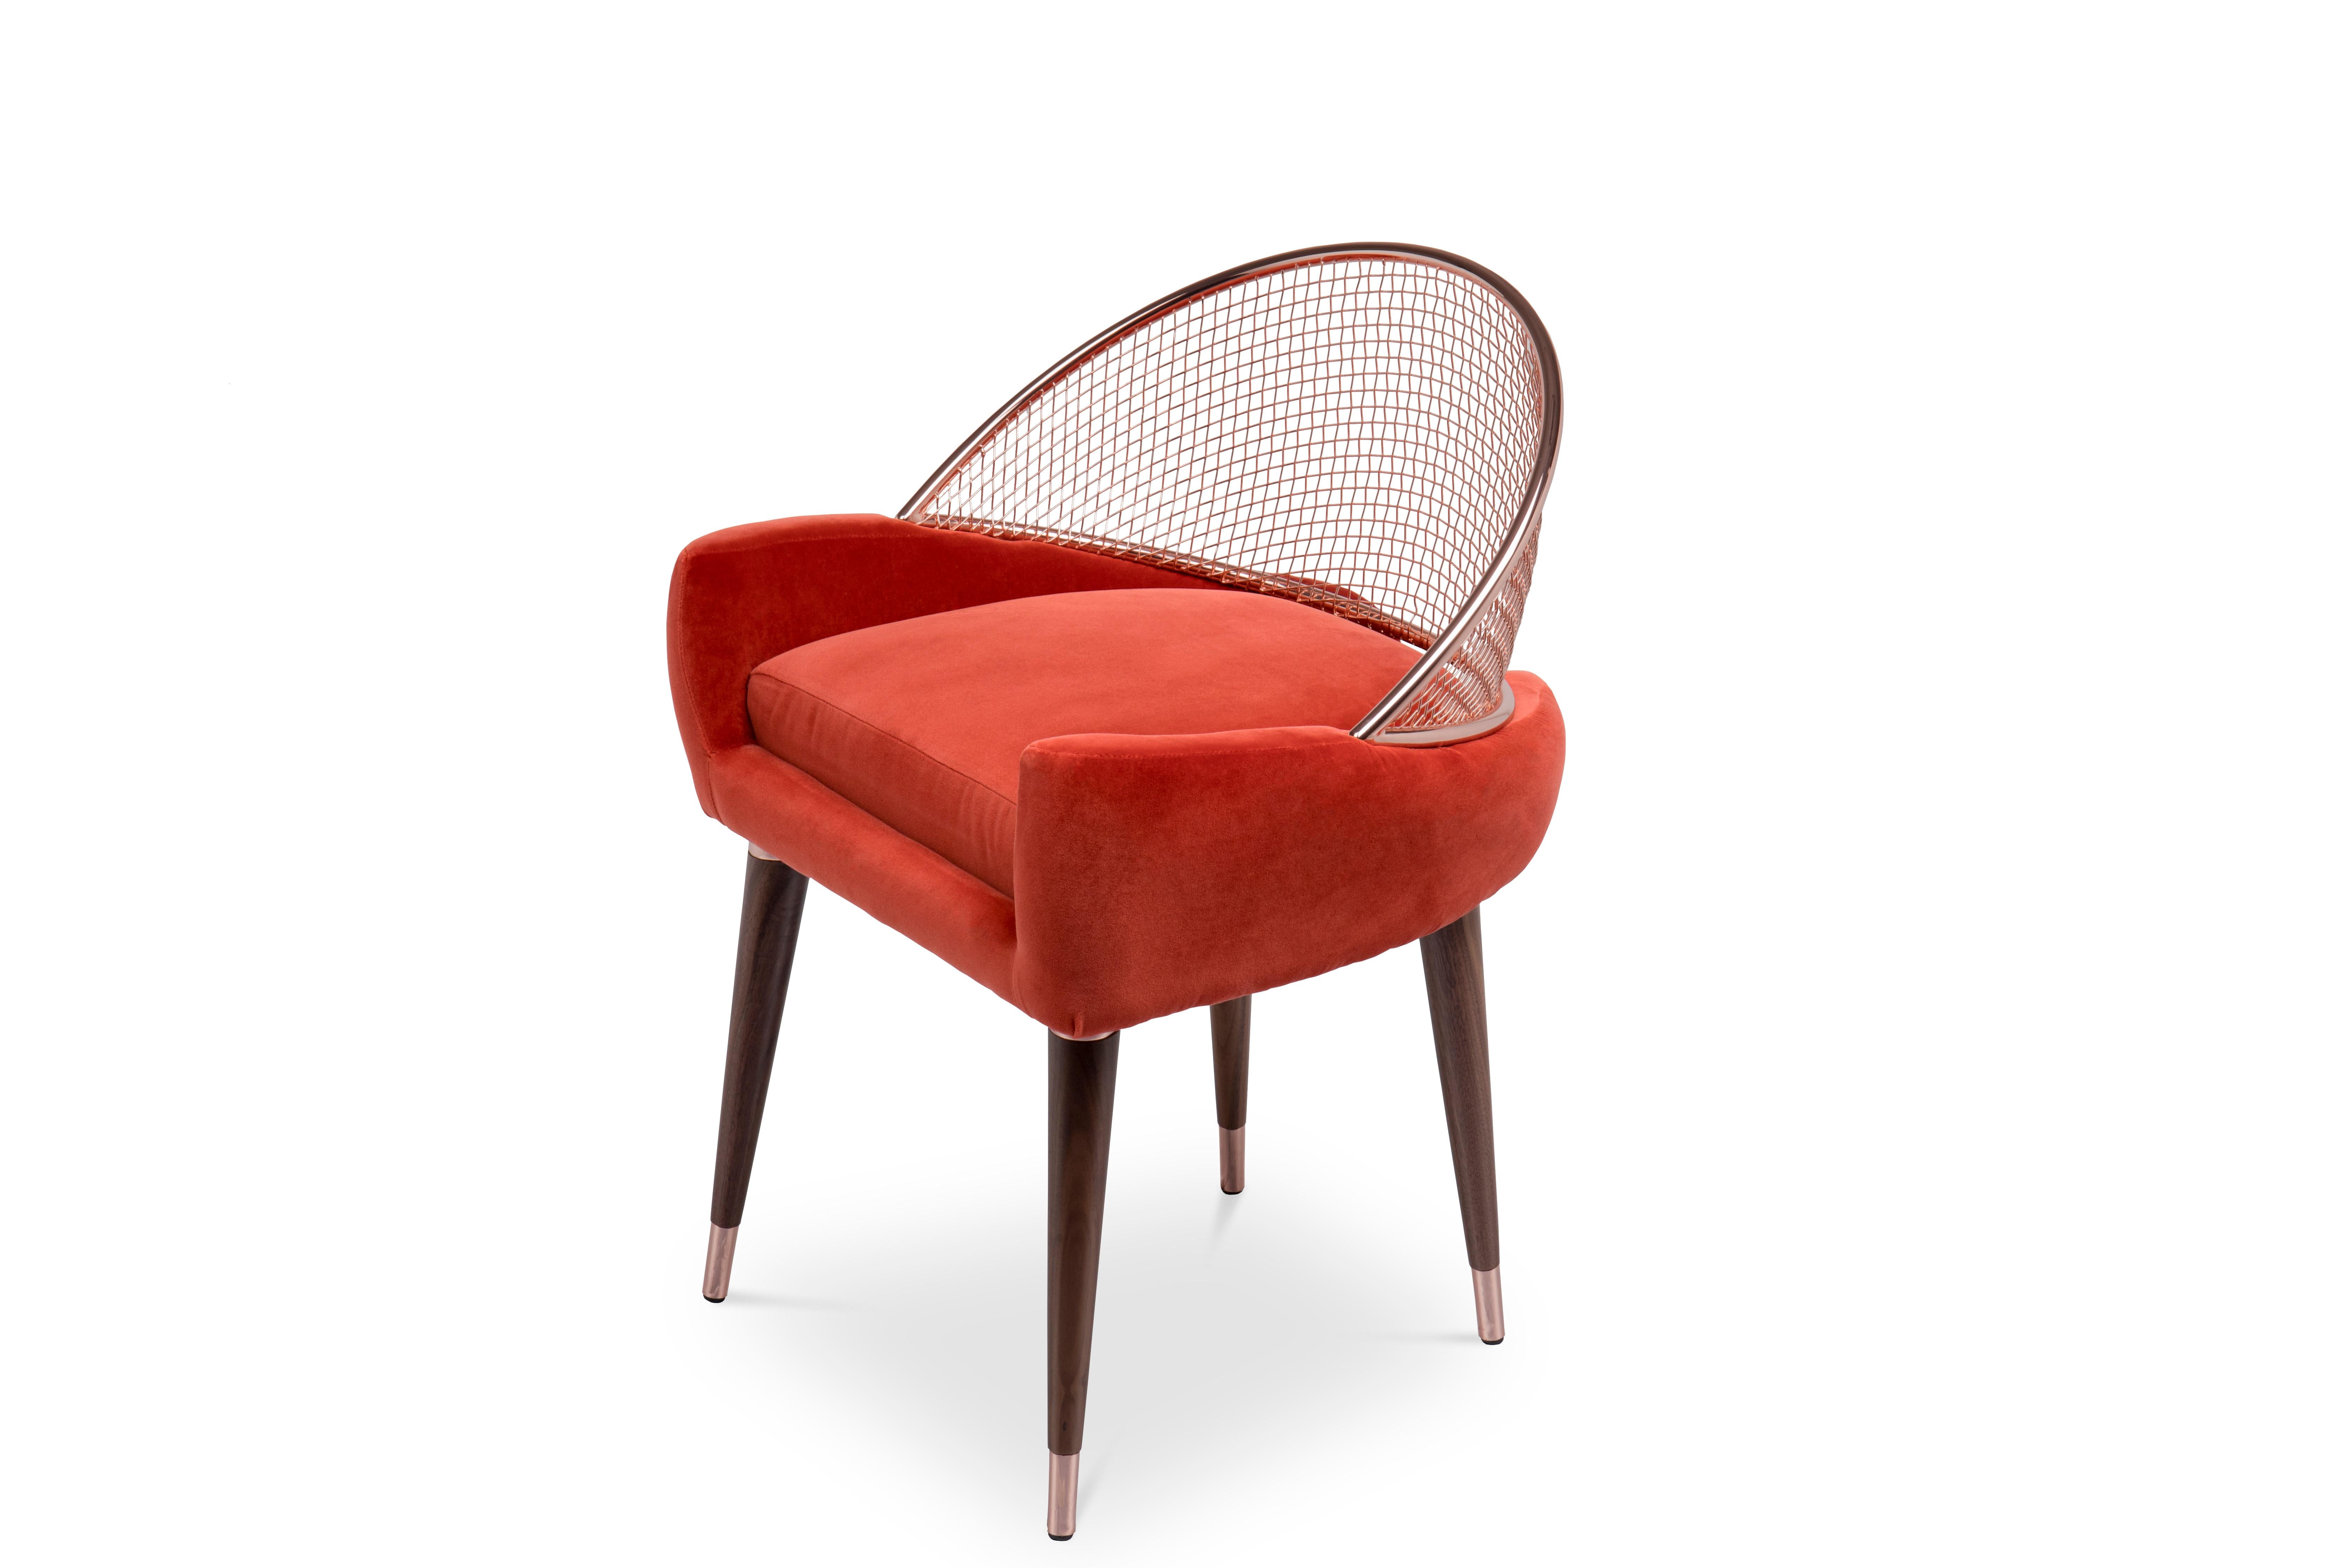 Moderner Garbo-Esszimmerstuhl aus rotem Samt von Essential Home aus der Jahrhundertmitte

Der Mid-Century Modern Garbo Dining Chair aus rotem Samt verfügt über einen mit Samt gepolsterten Sitz mit abnehmbarem Kissen, der durch eine sichelförmige,